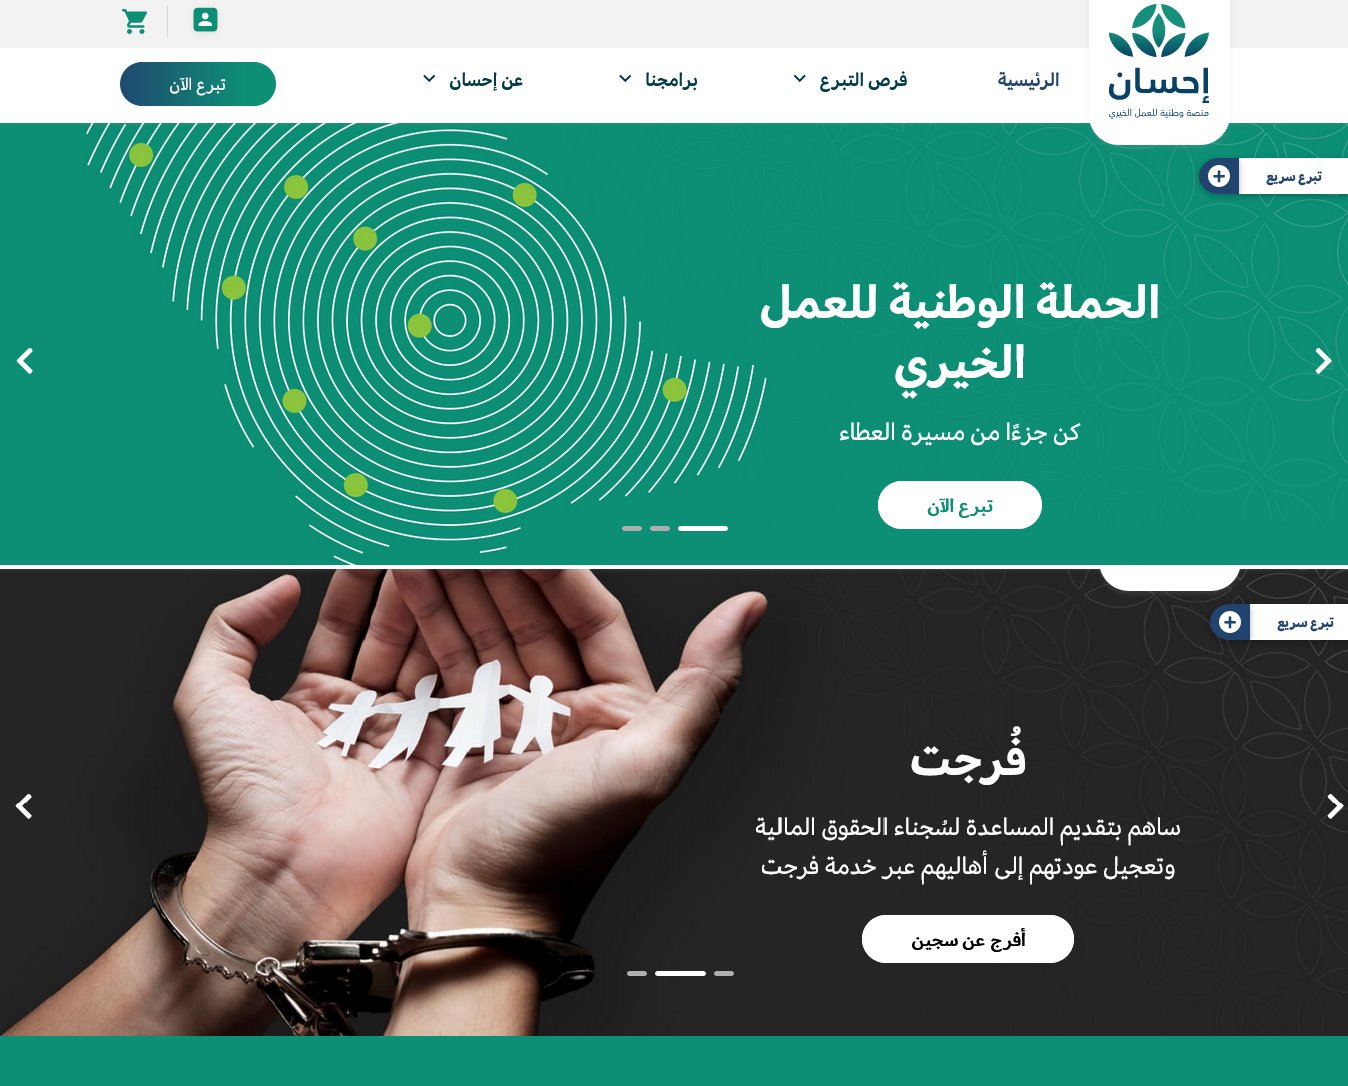 التسجيل على منصة جمعية إحسان ehsan.sa "كمحتاج" تبرعات لسداد الديون ورفع إيقاف خدمات